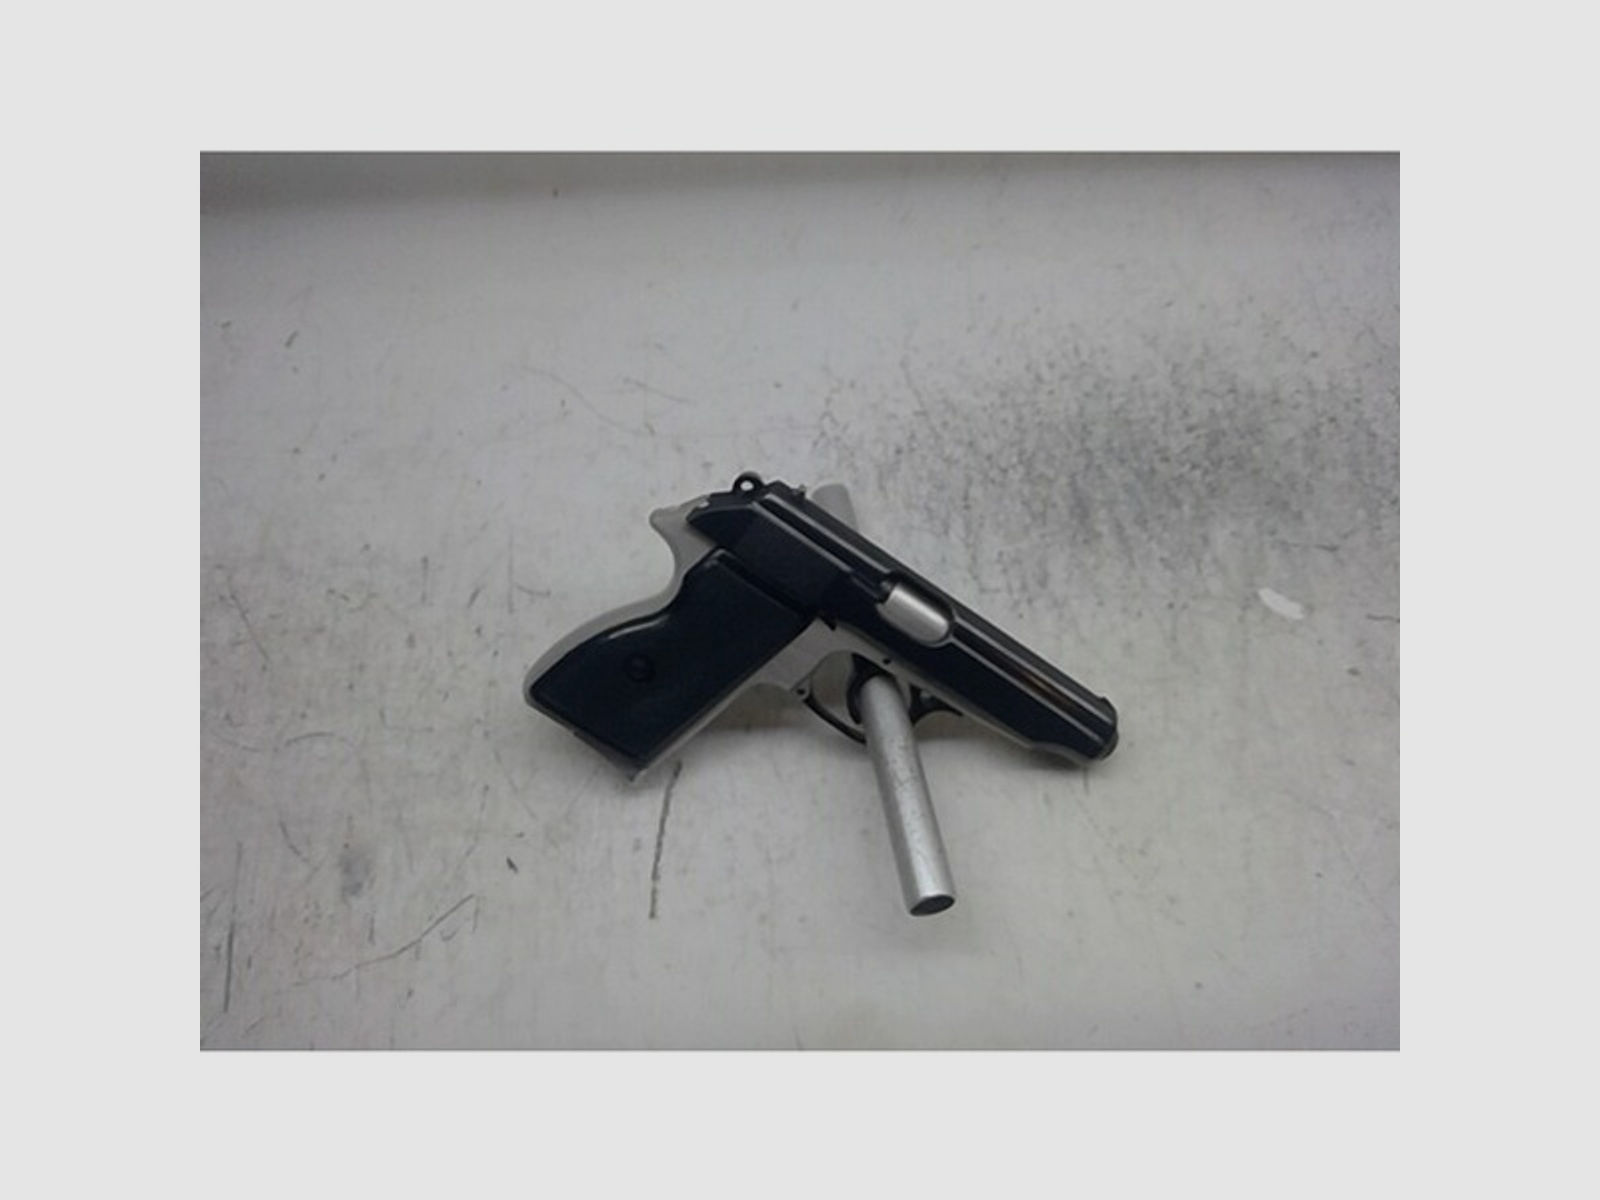 Pistole PA63 im Kaliber 9mm Makarov gebraucht